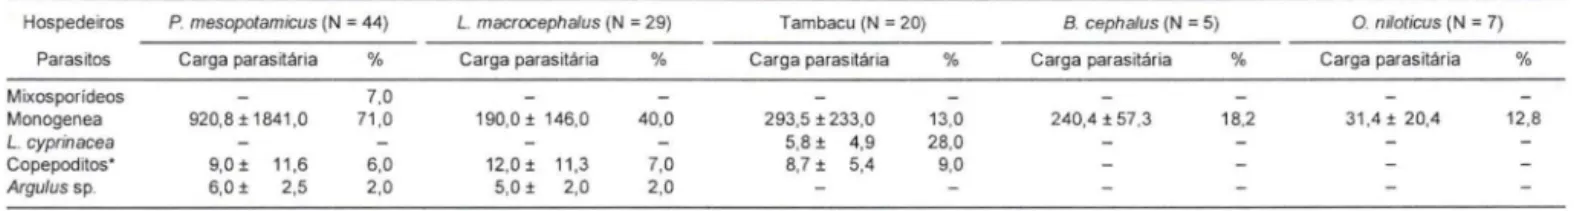 Tabela  I.  Carga parasitária média e ocorrência (%)  de parasitos metazoários em  226 peixes necropsiados no &#34;pesque-pague&#34;  1 MG,  período de  abril de 1997 a março de 1999, no município de Franca, São Paulo